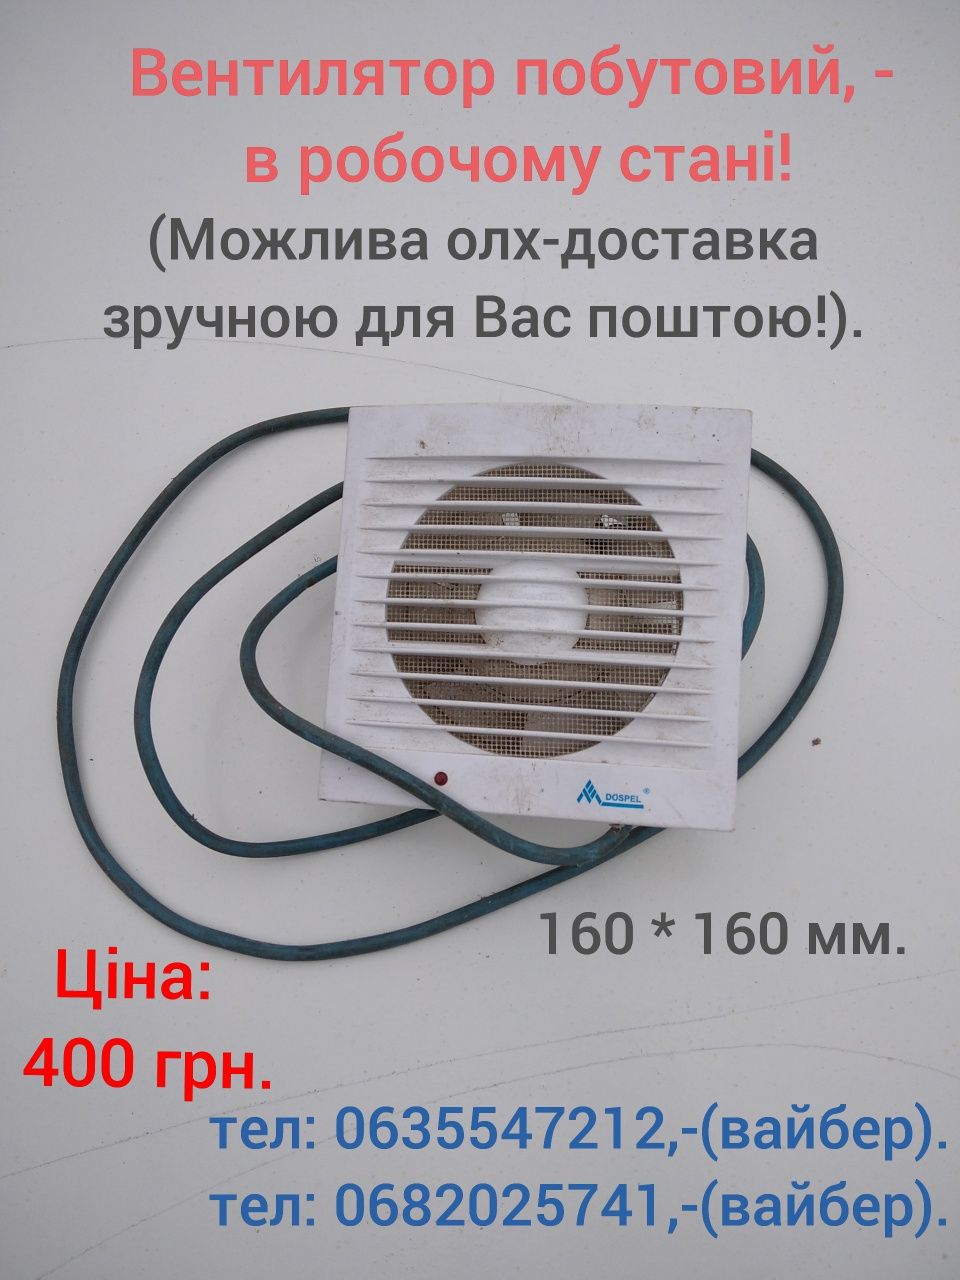 Конвертер супутника: EHKF - 110 A.